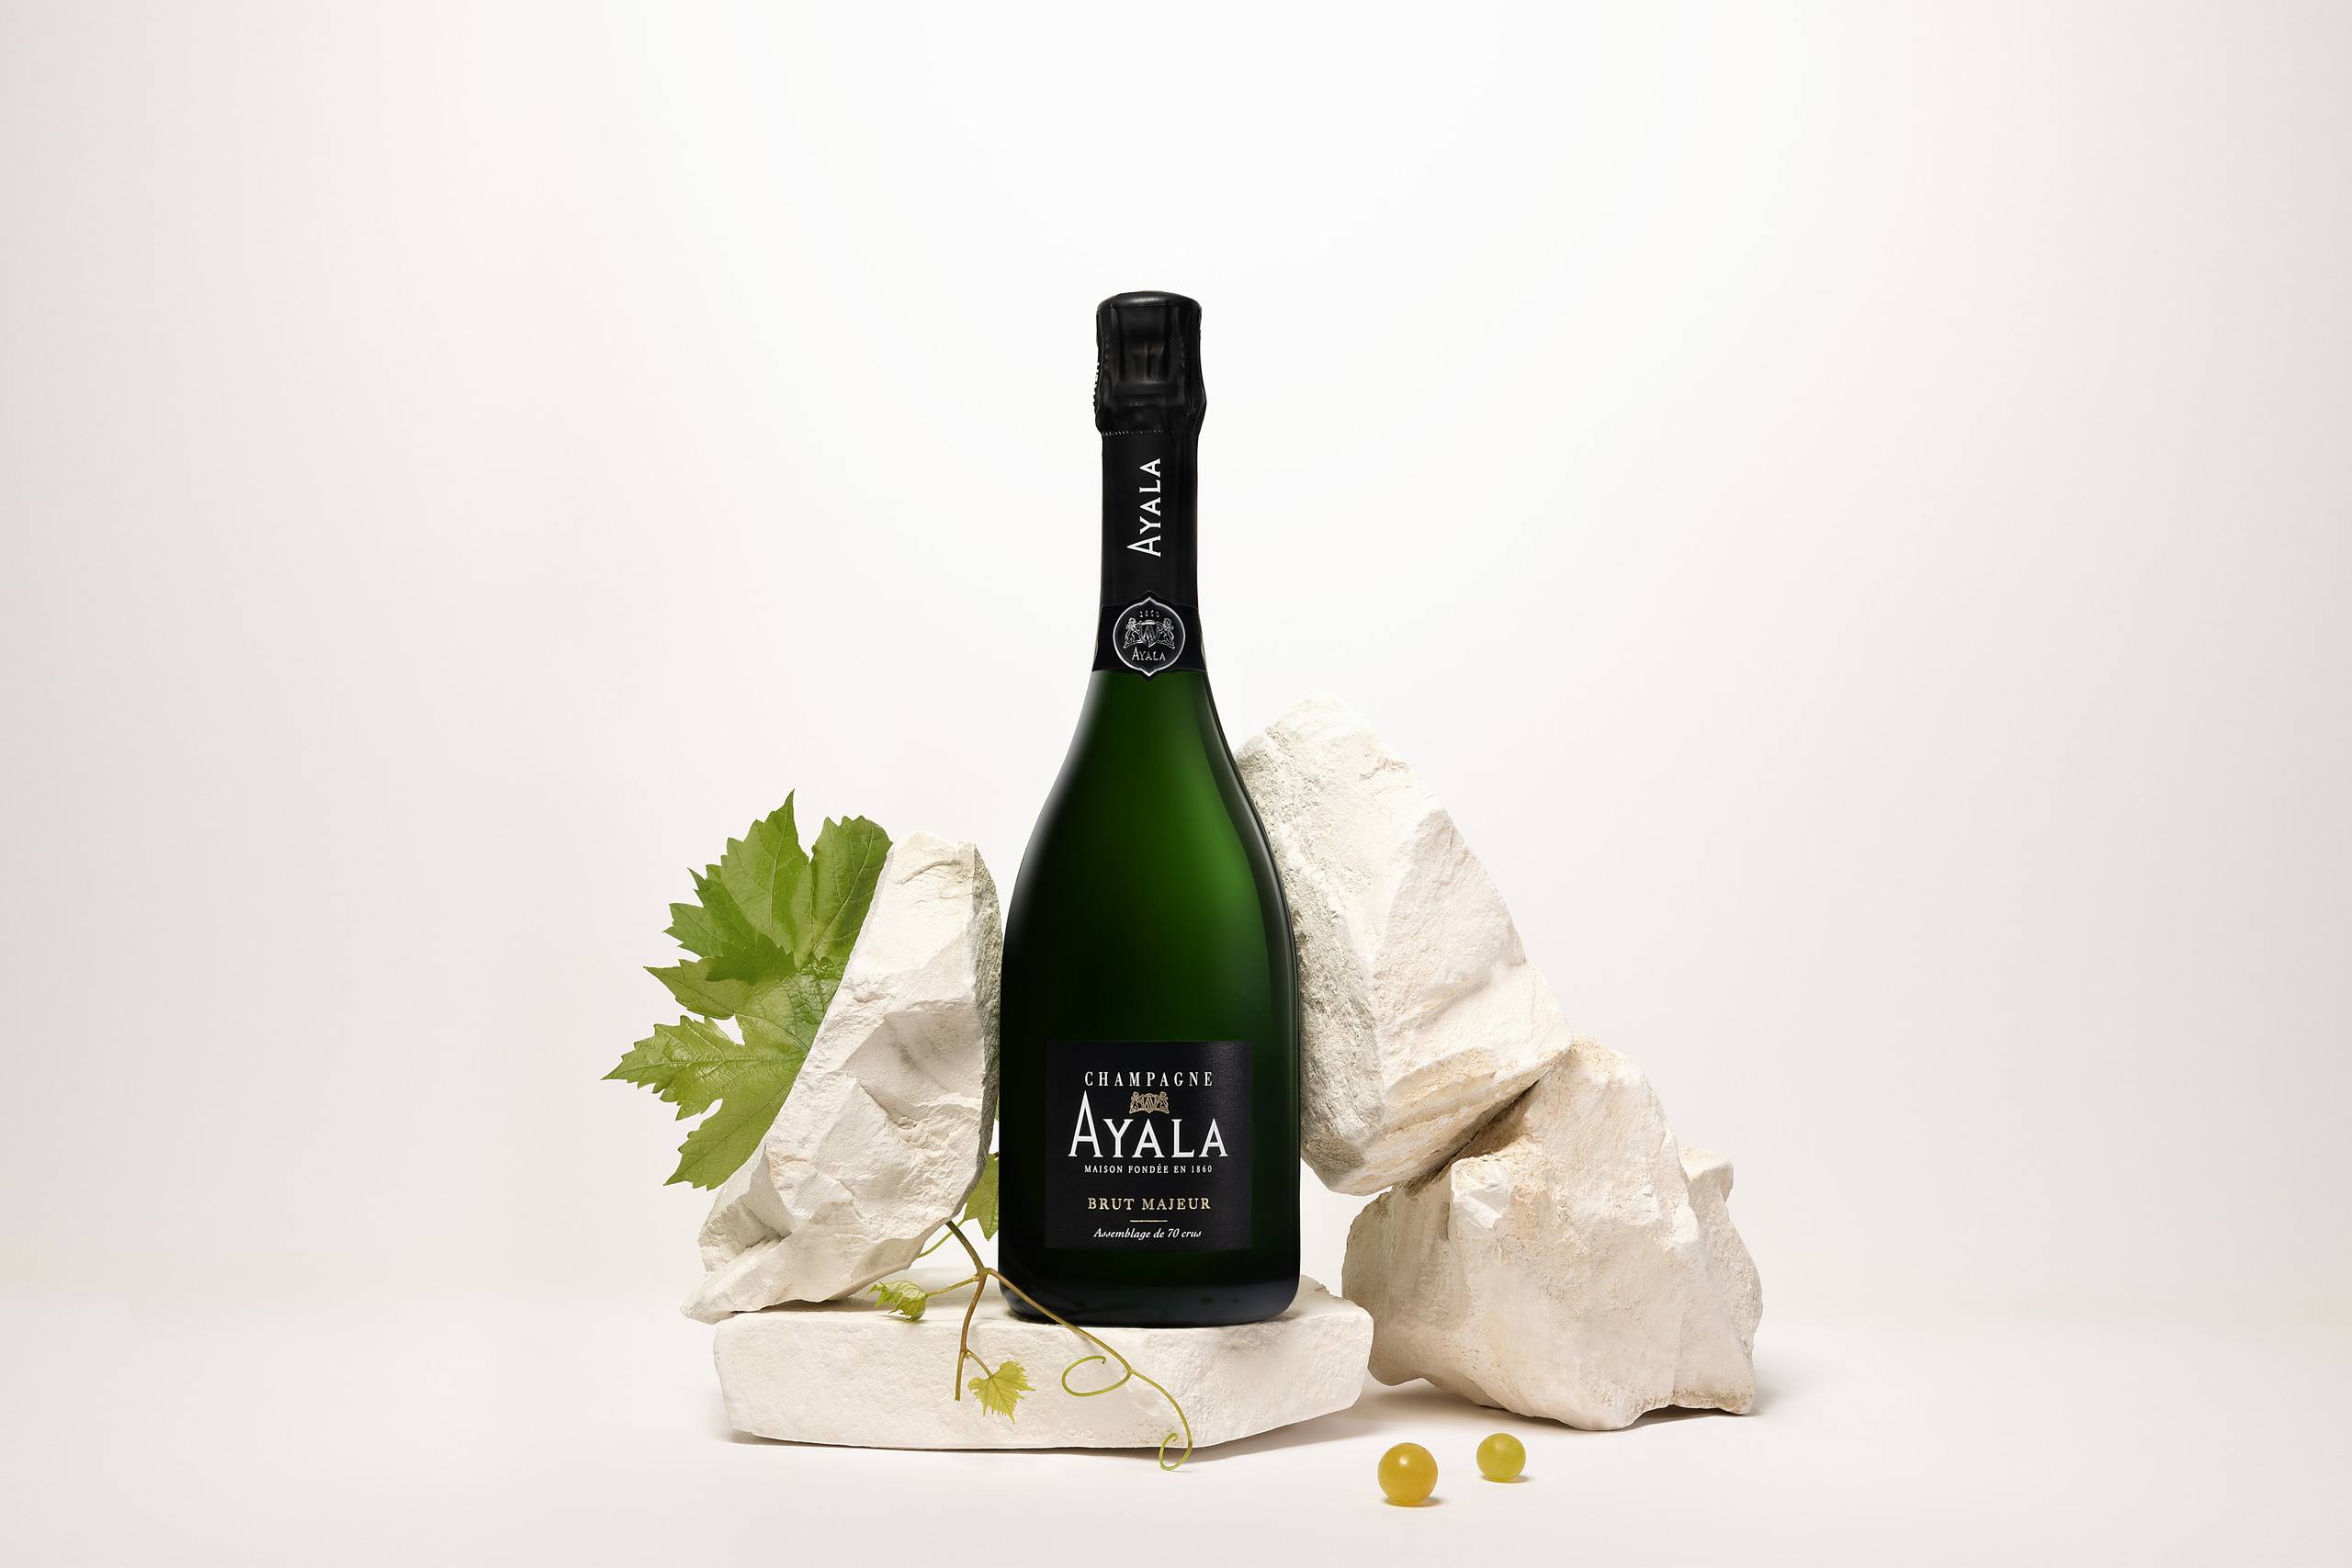 Le Blanc de Blancs - Champagne Ayala